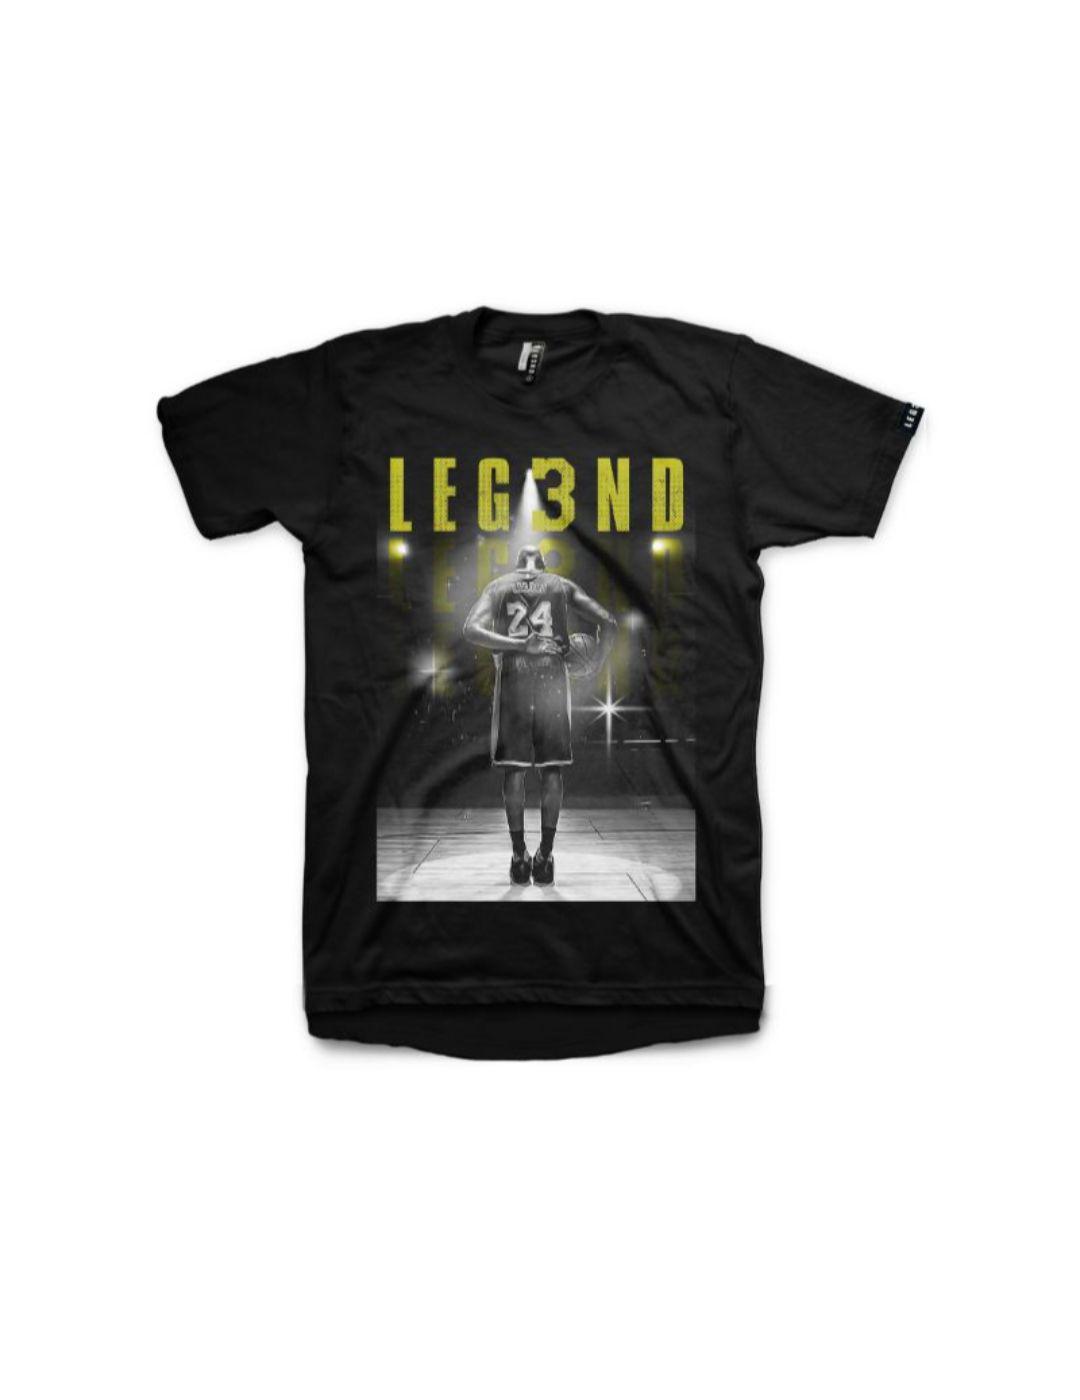 Camiseta Leg3nd Tribute Cobe Bryant negra -x